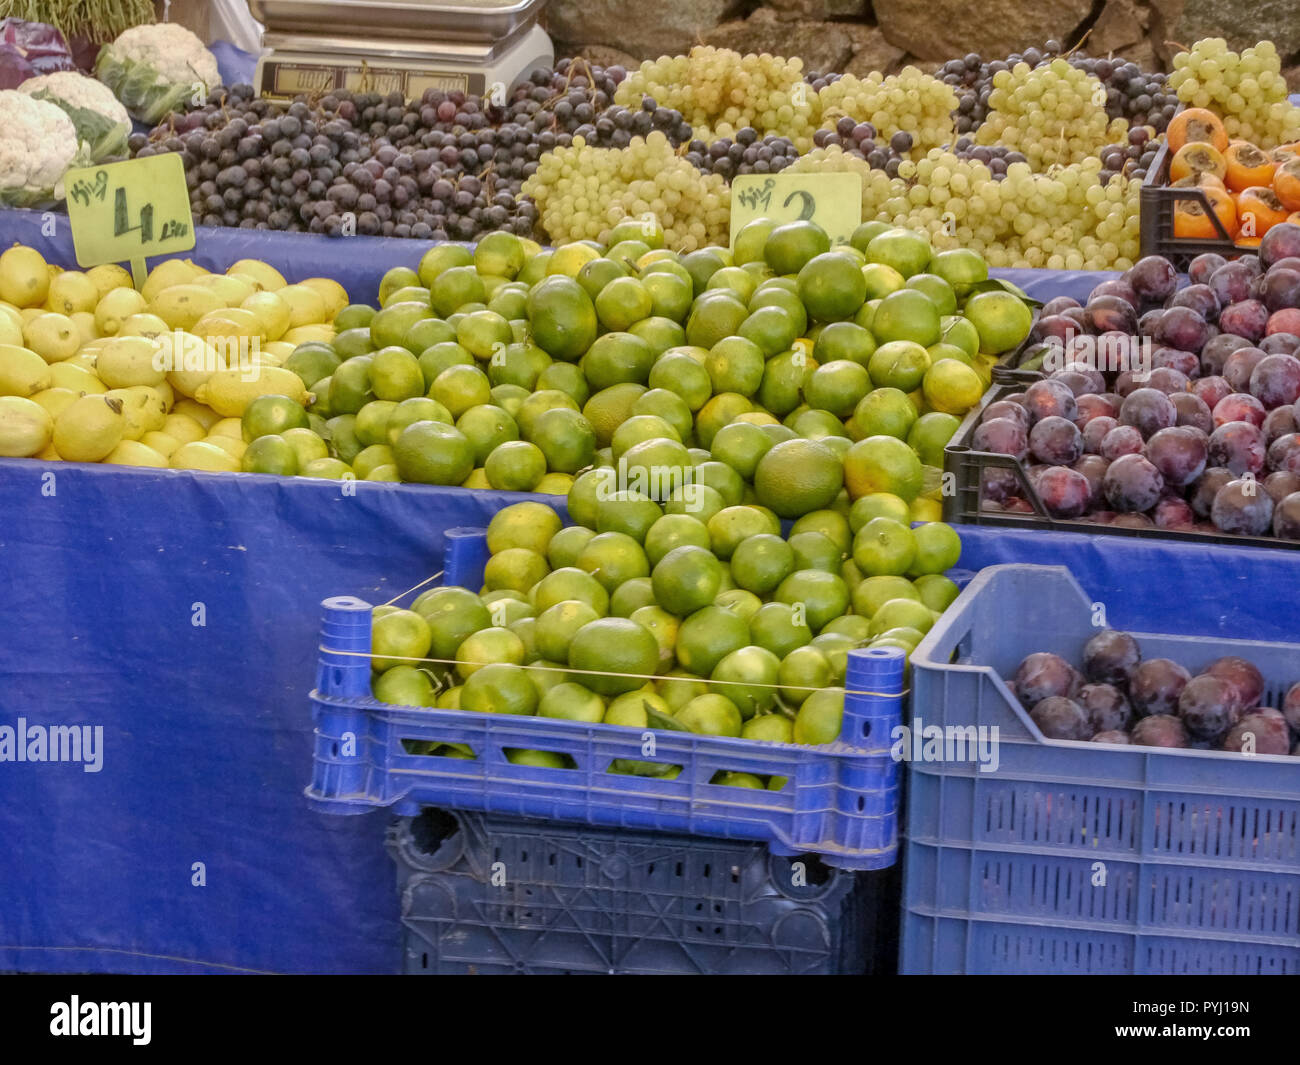 Fruits at Turkey Market Stock Photo